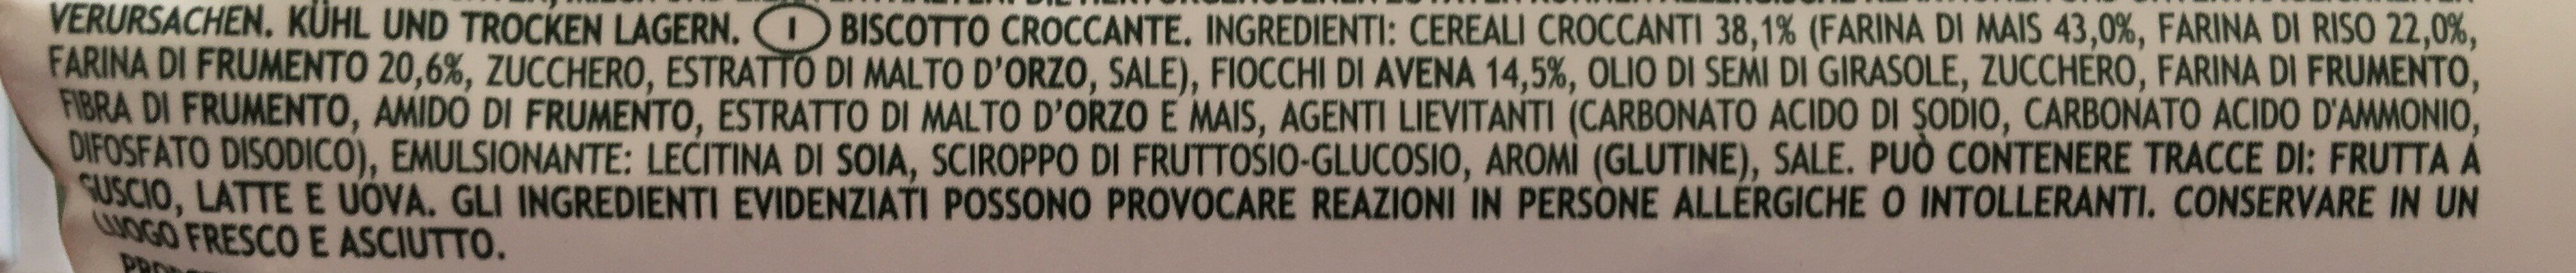 Croccante con Riso - Ingredienti - it